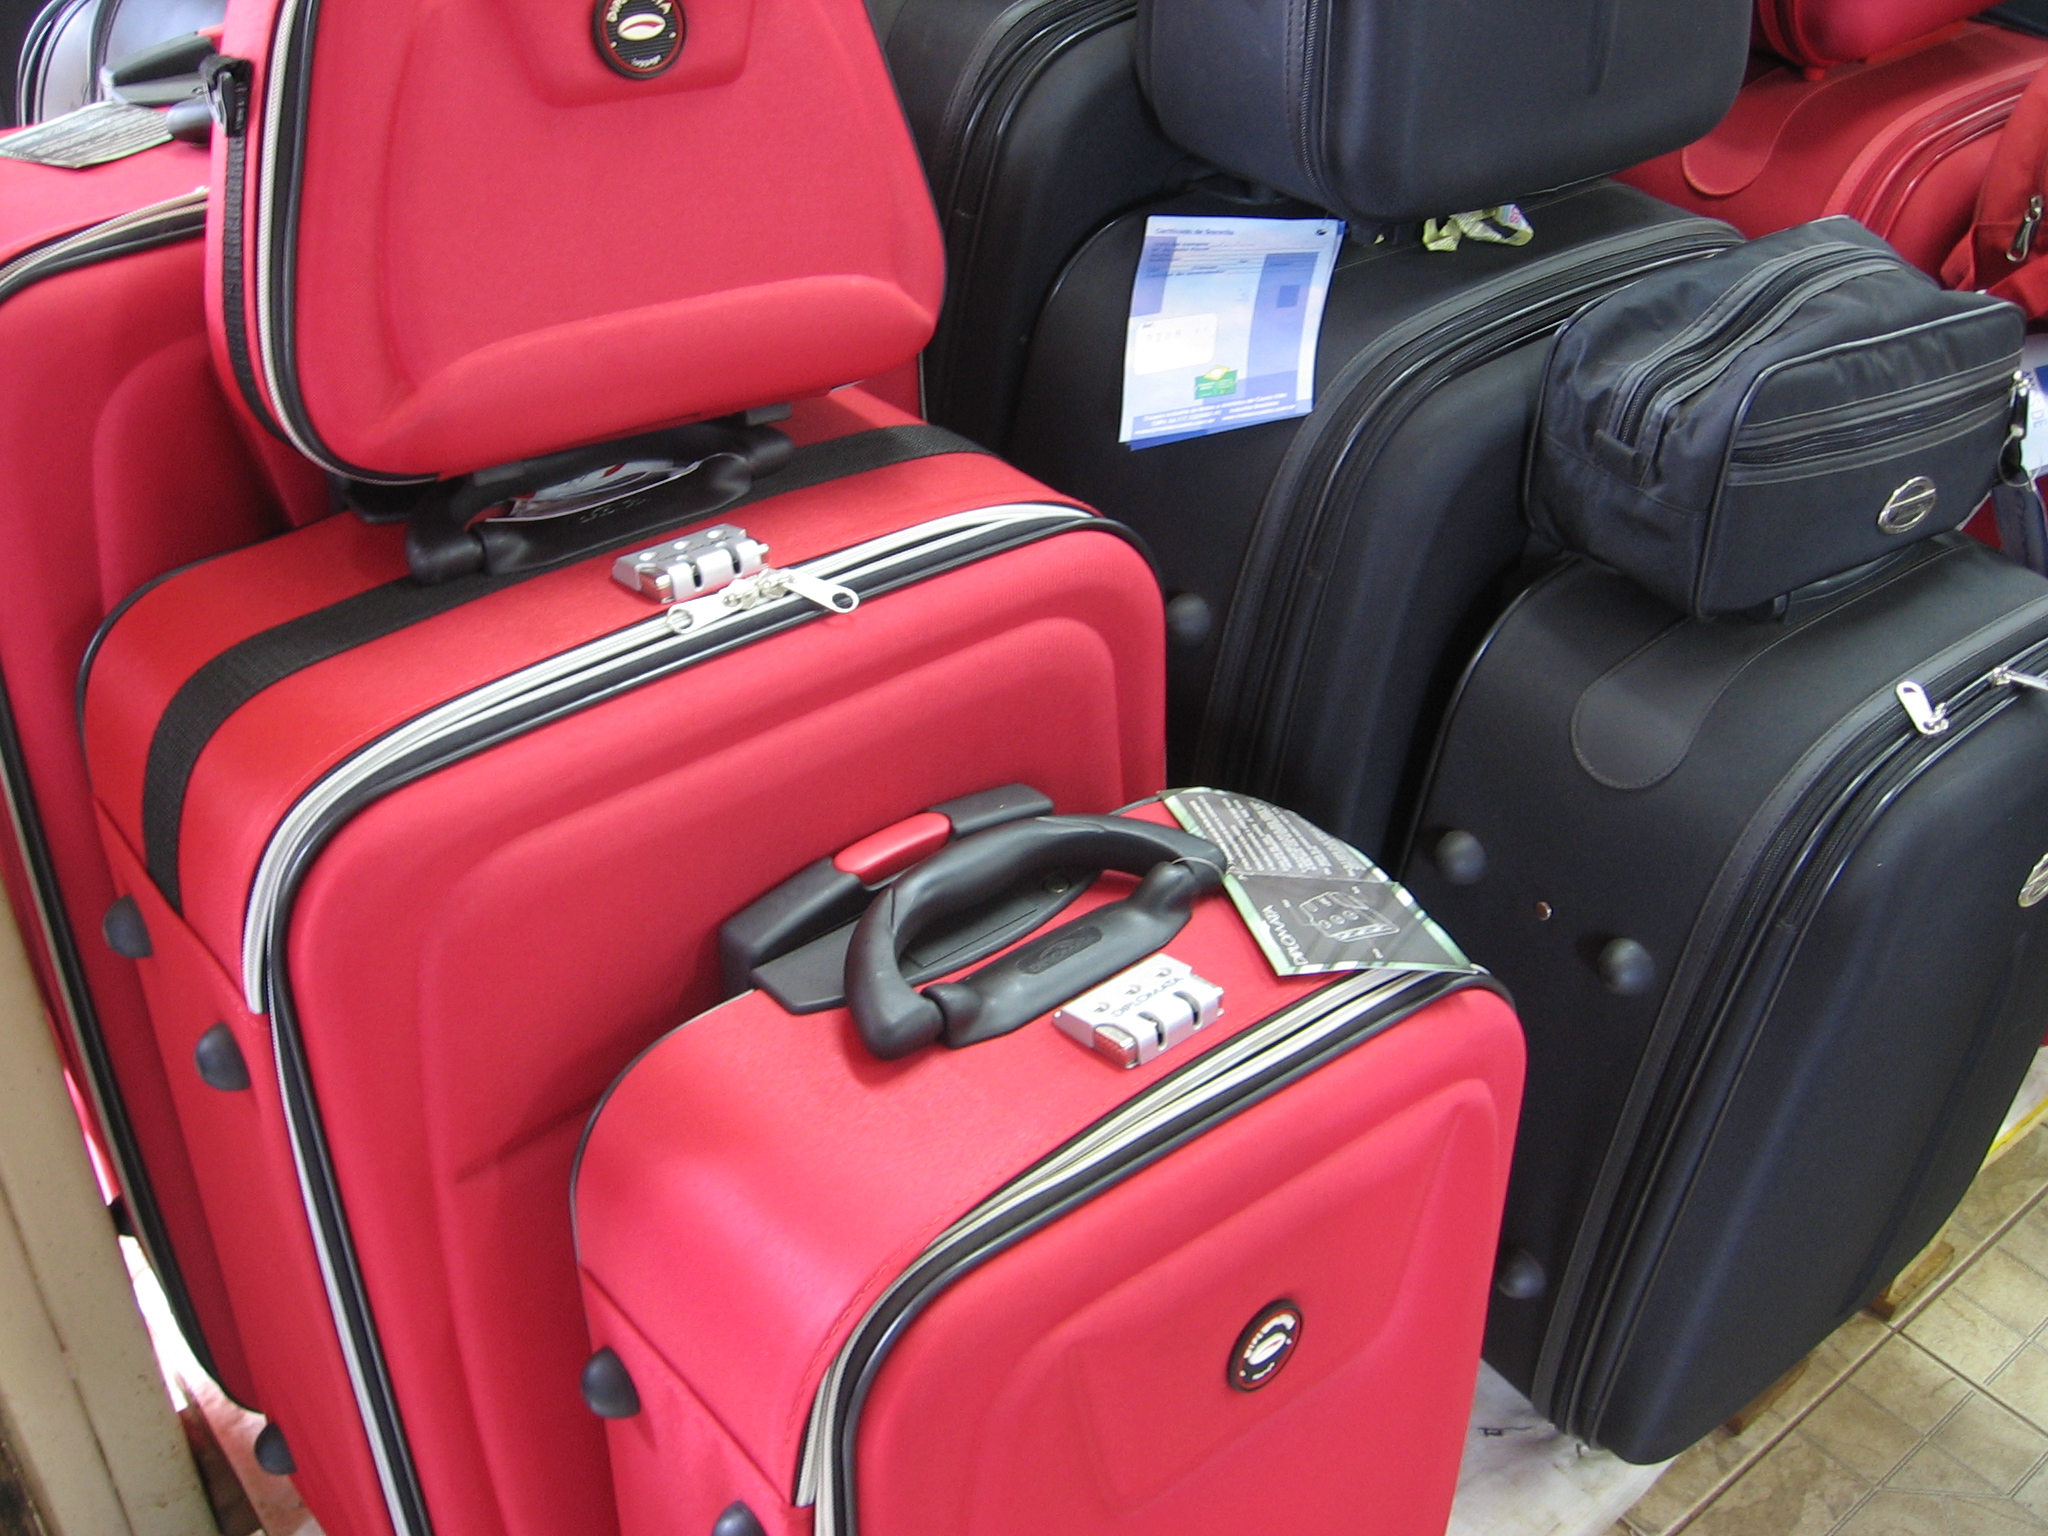 7 consejos que seguir al perder la maleta en el aeropuerto